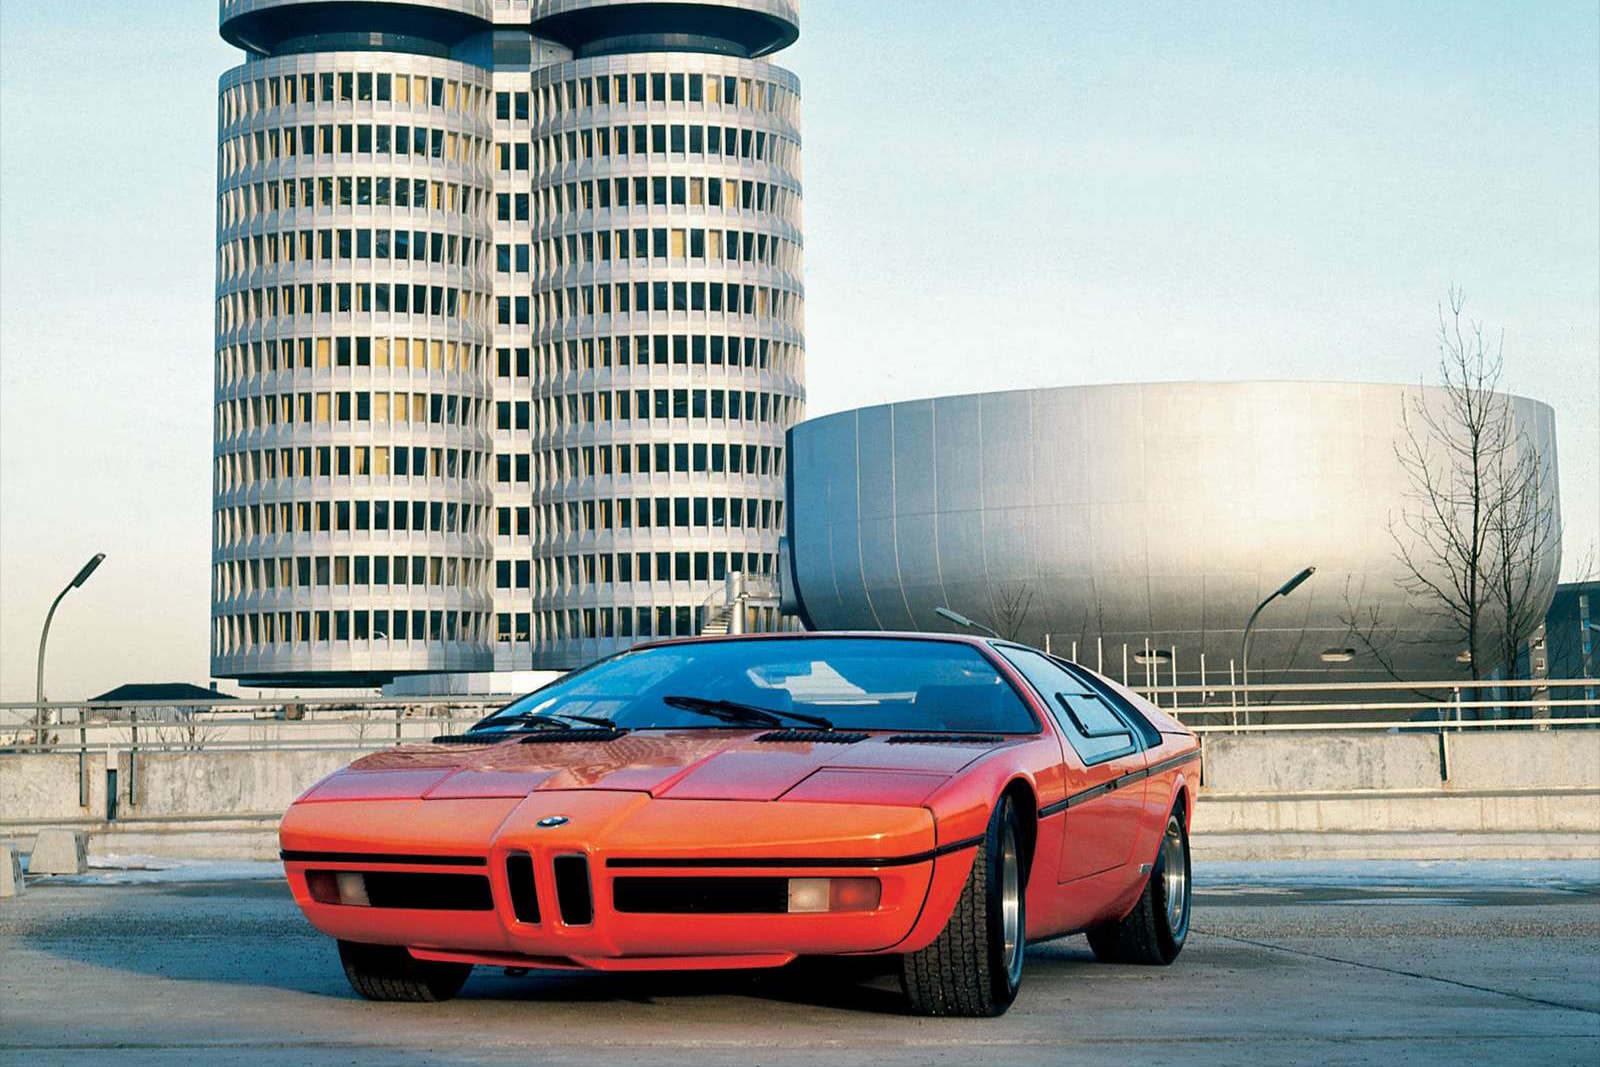 BMW 將於香港呈現 M 系始祖之 Turbo Concept 概念車